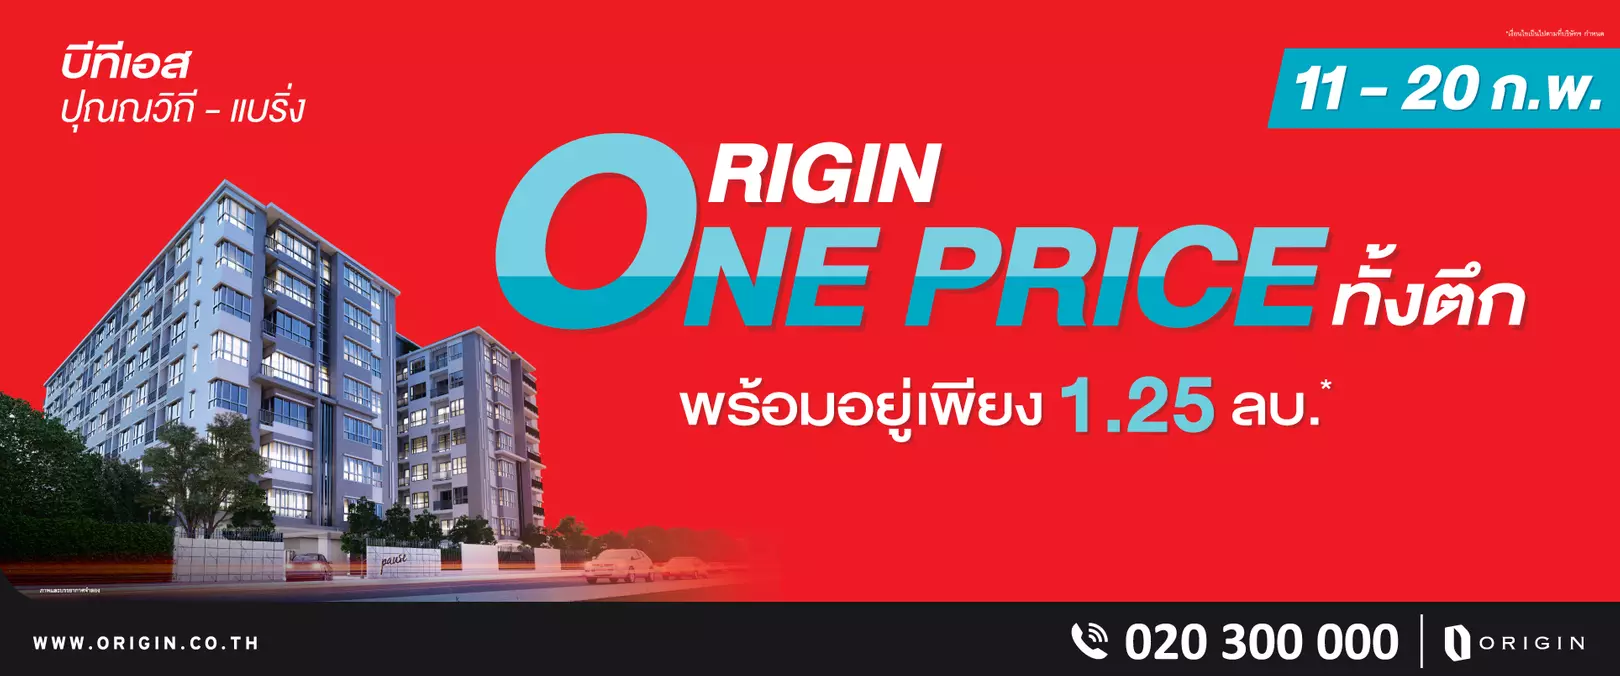 origin-one-price-web-regis